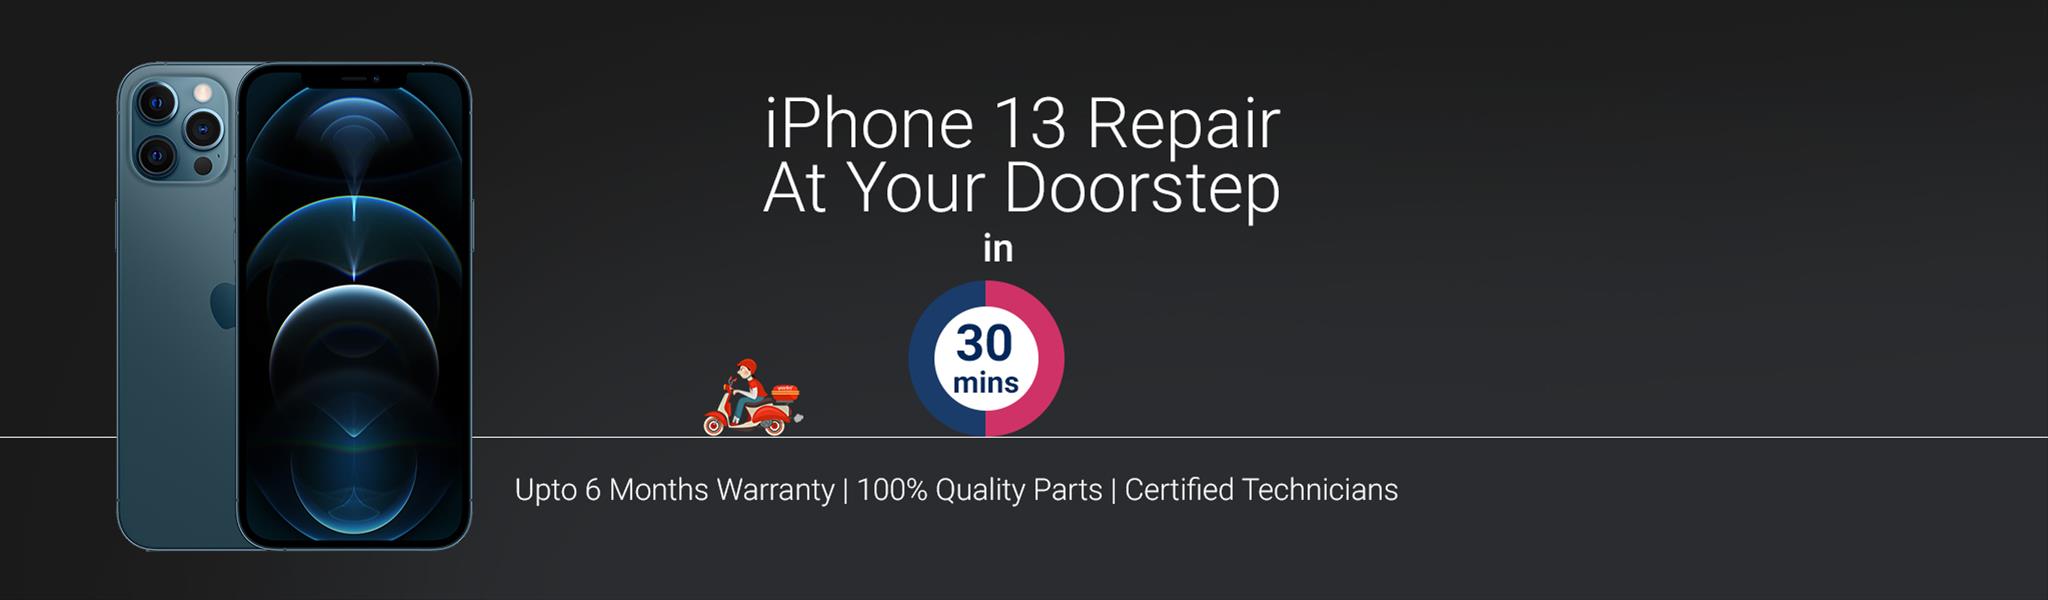 Doorstep mobile repair